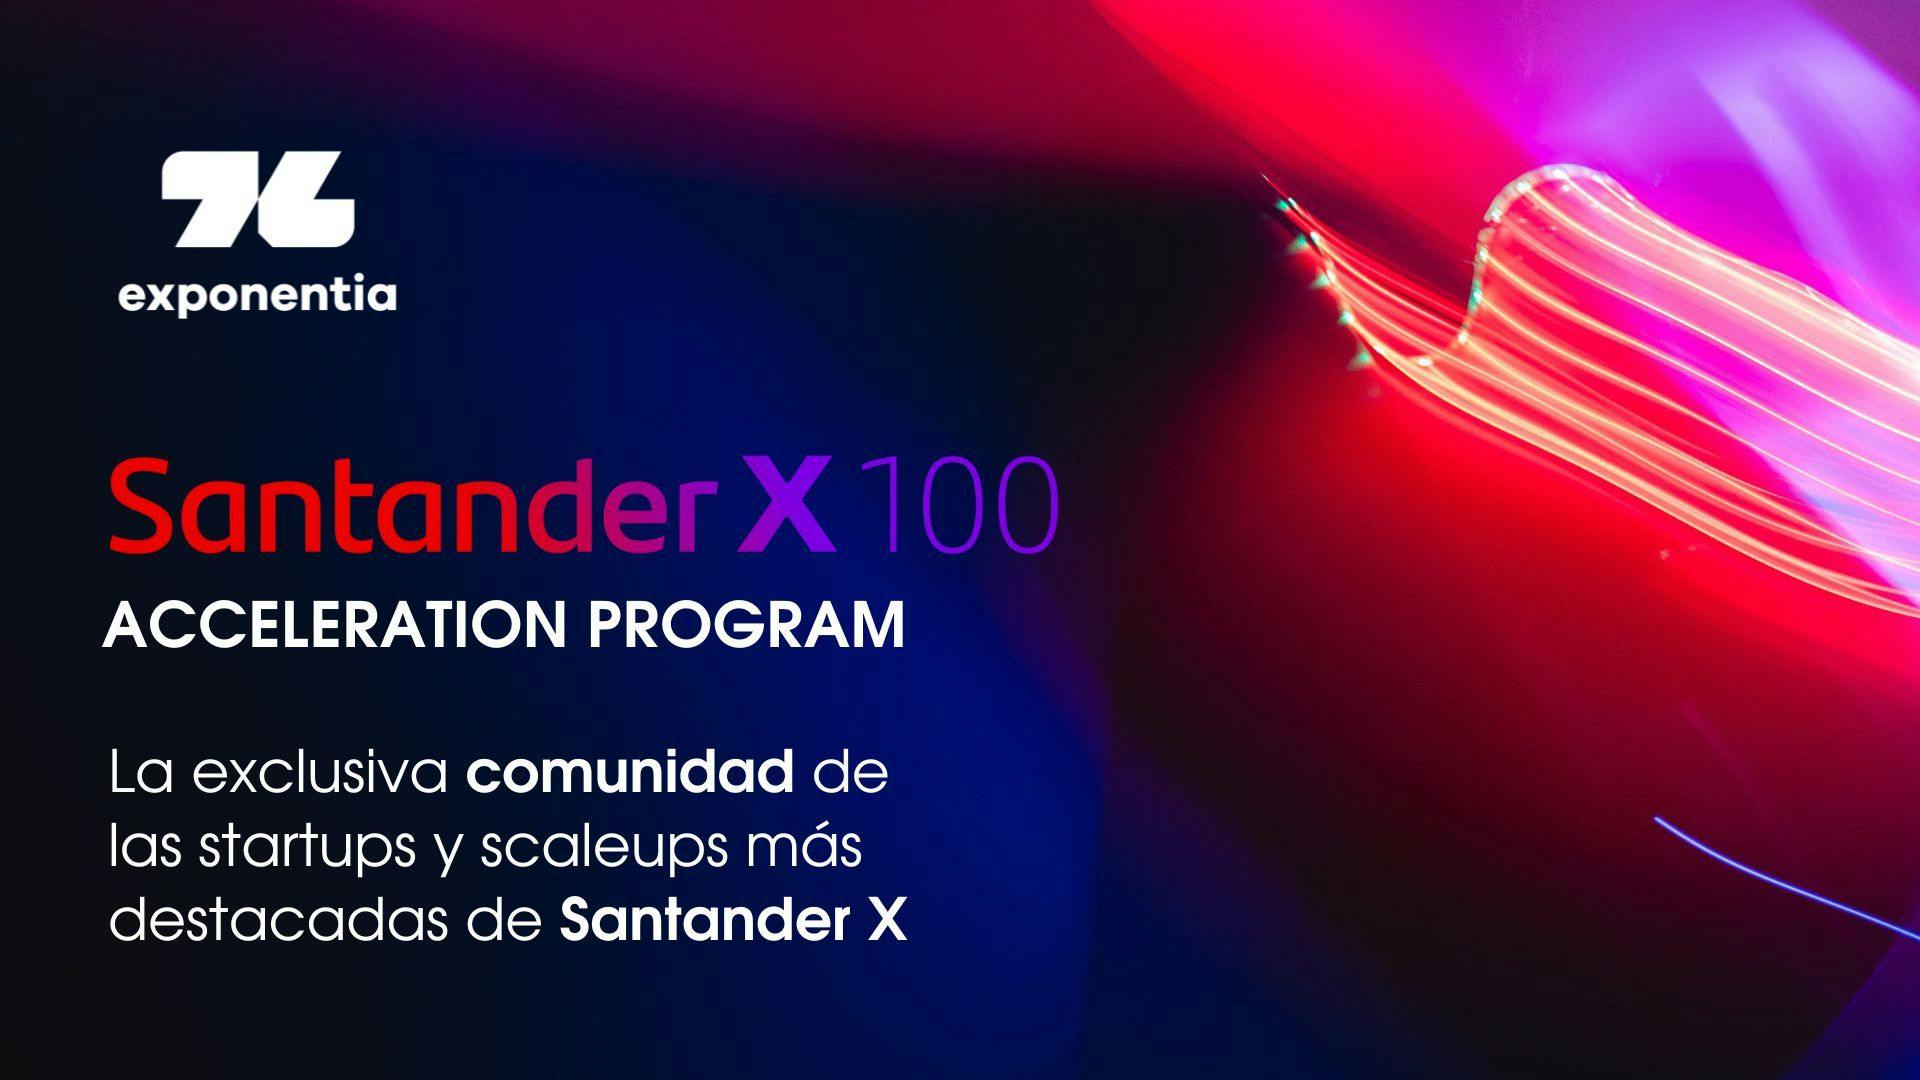 Exponentia colabora con Santander X 100 en impulsar proyectos a través del 'Acceleration Program'